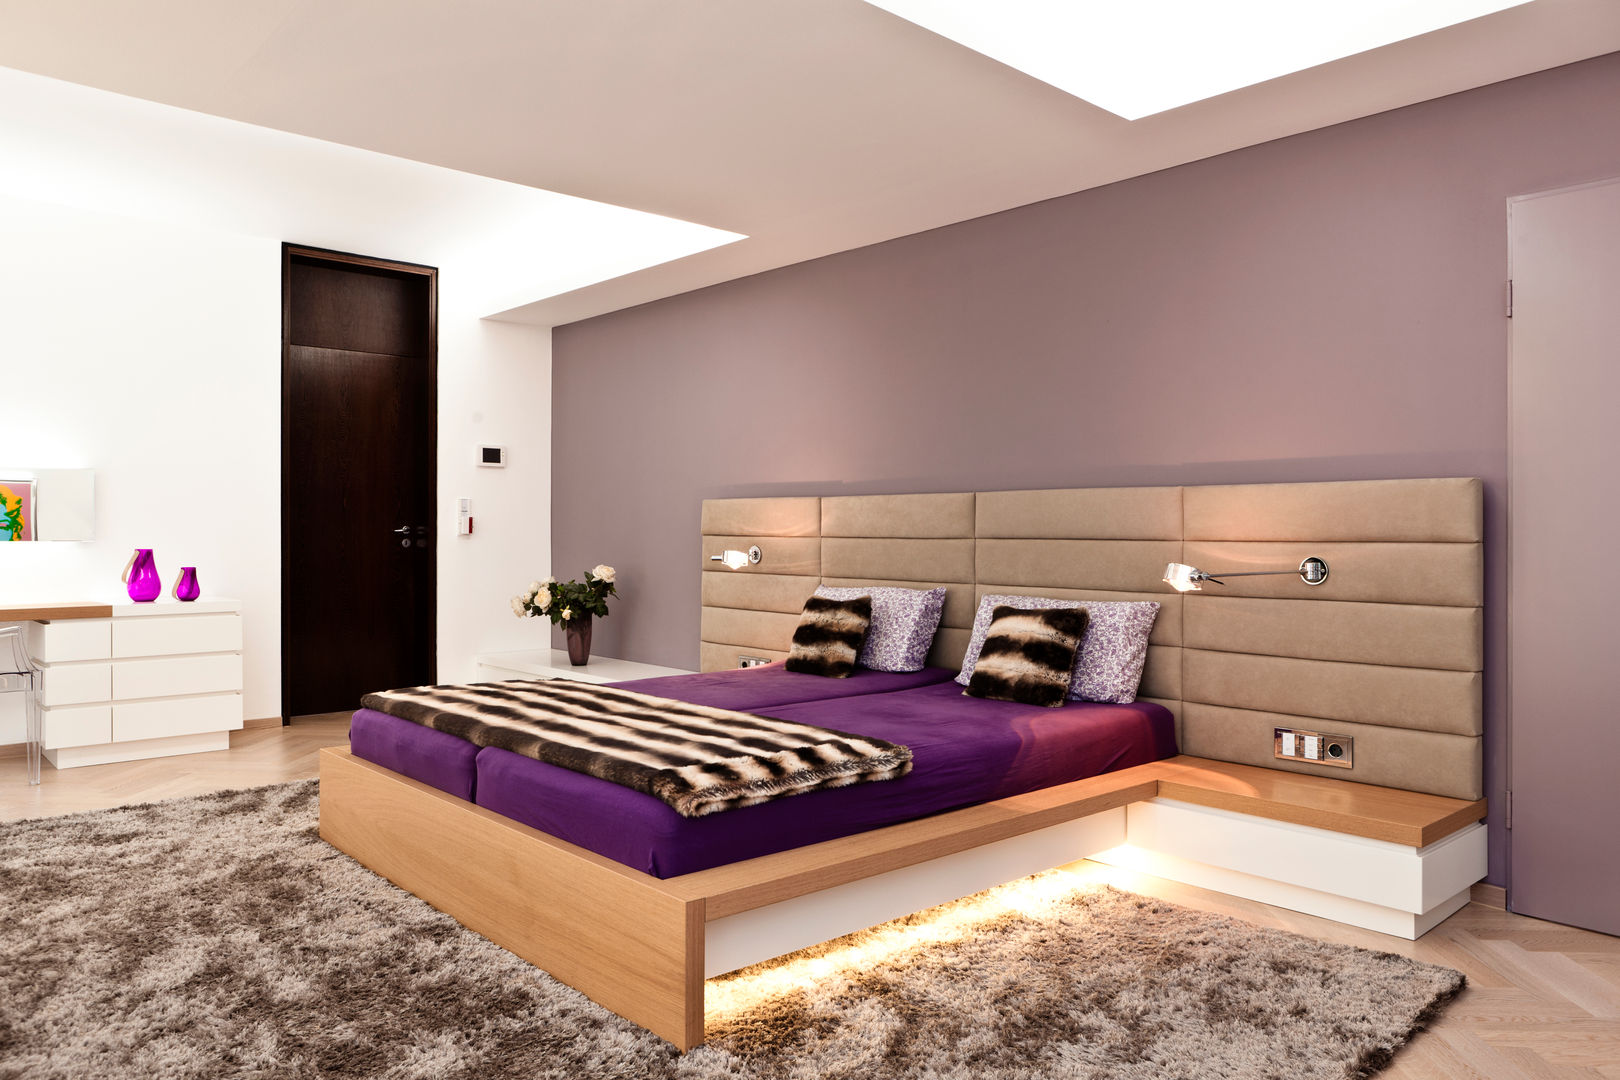 Betten, schulz.rooms schulz.rooms Classic style bedroom